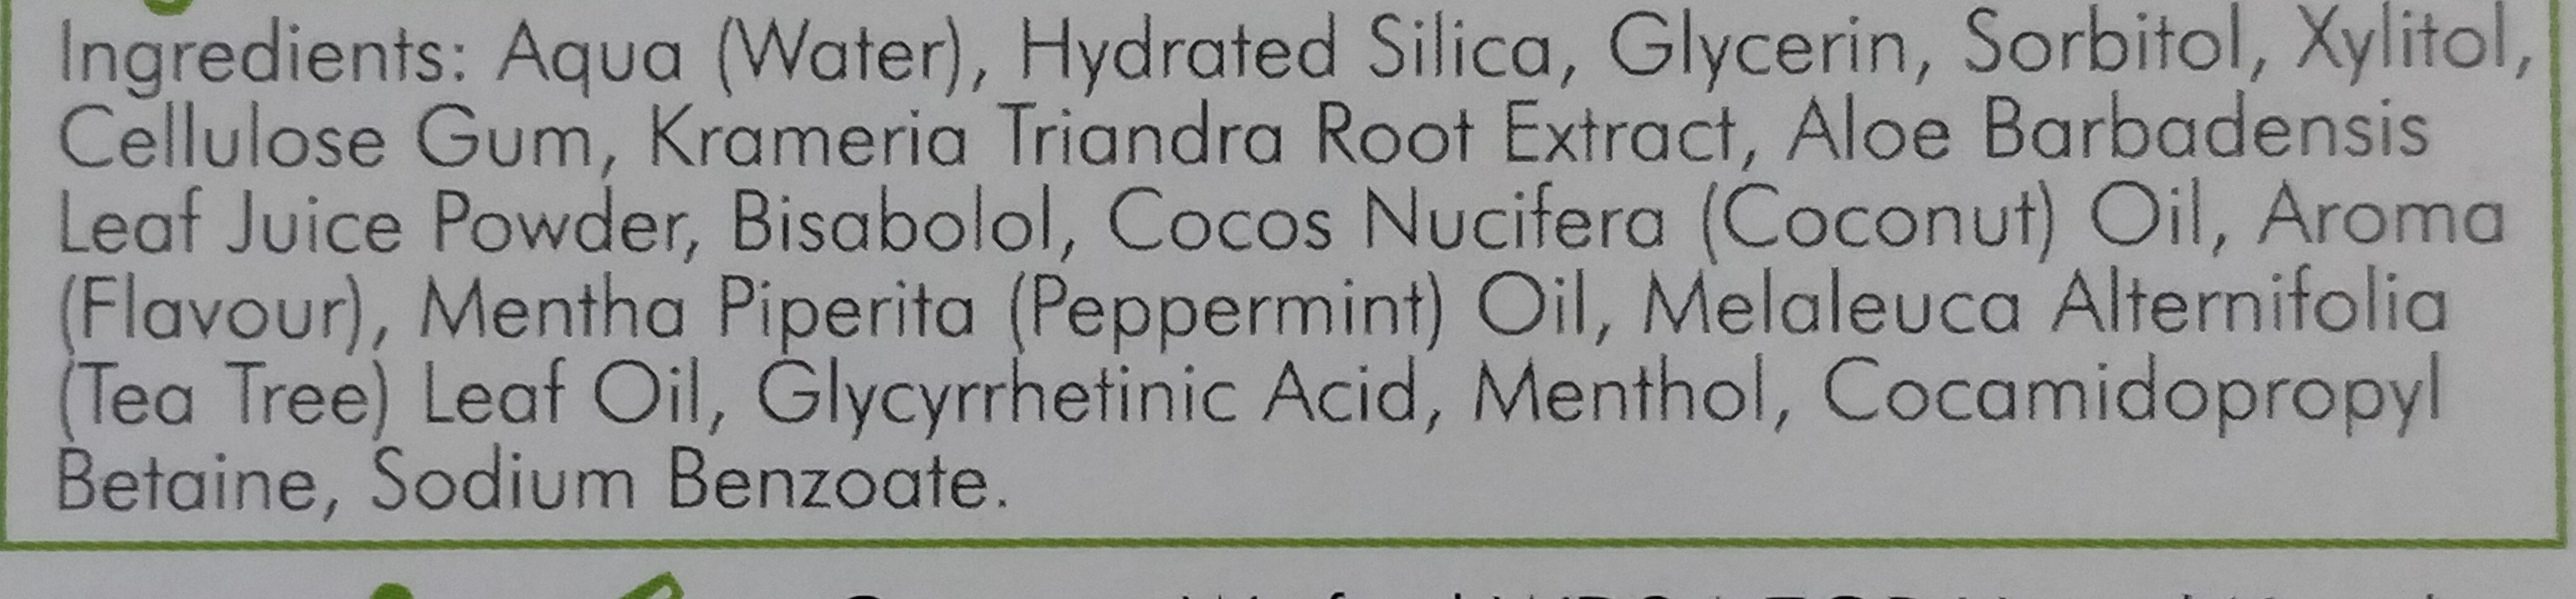 Dentifrice coconut oil and aloe vera - Ingrediencoj - fr